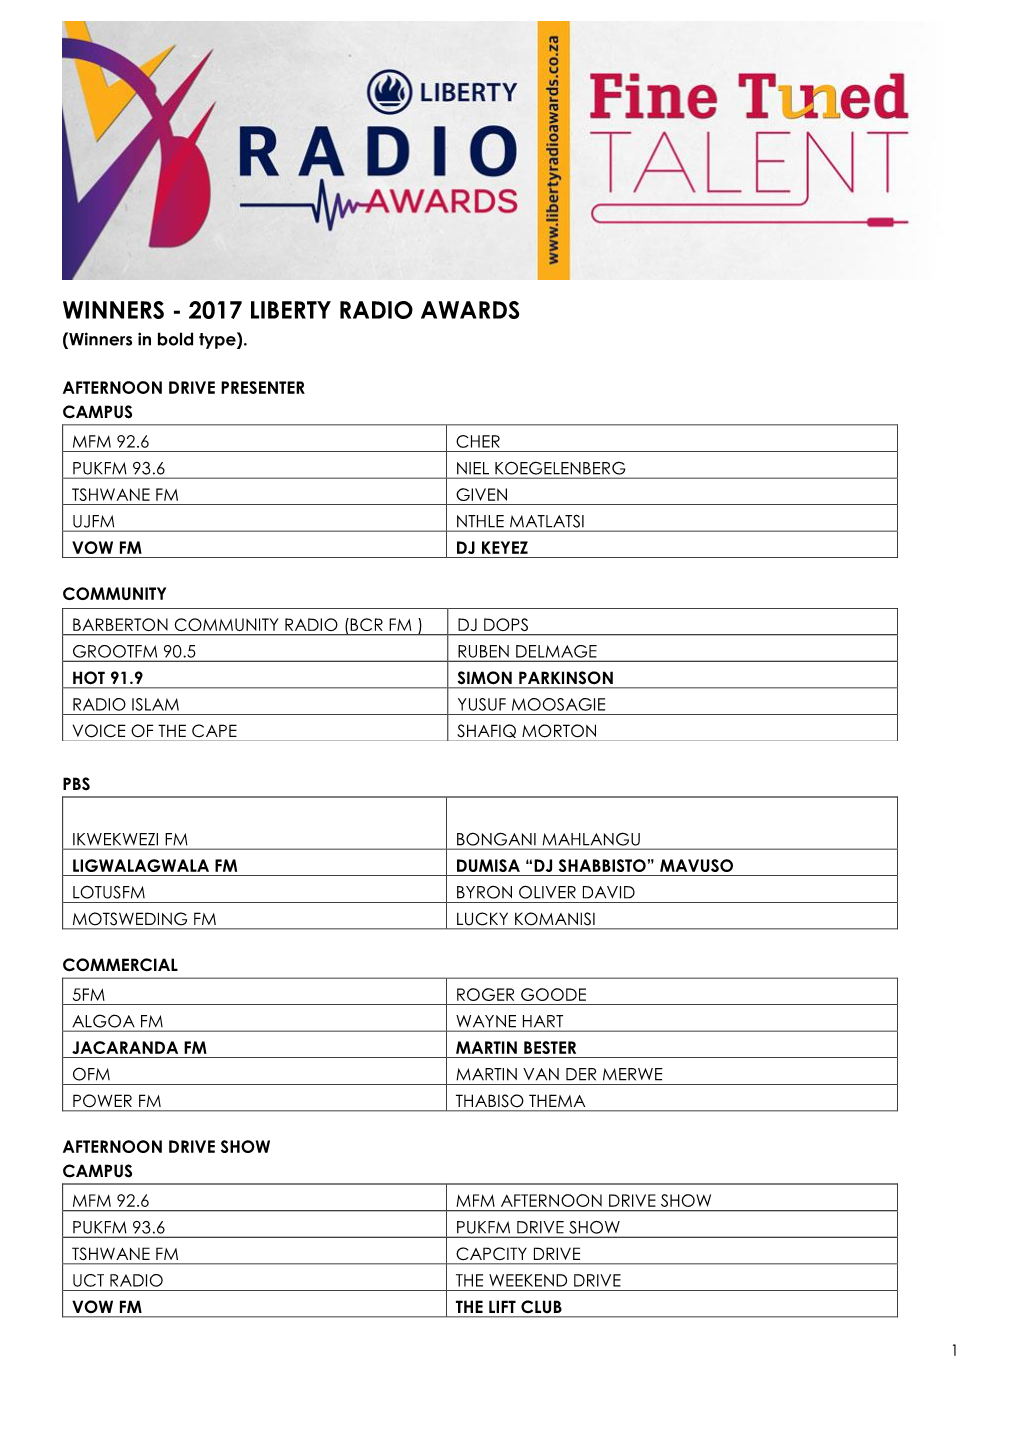 WINNERS - 2017 LIBERTY RADIO AWARDS (Winners in Bold Type)